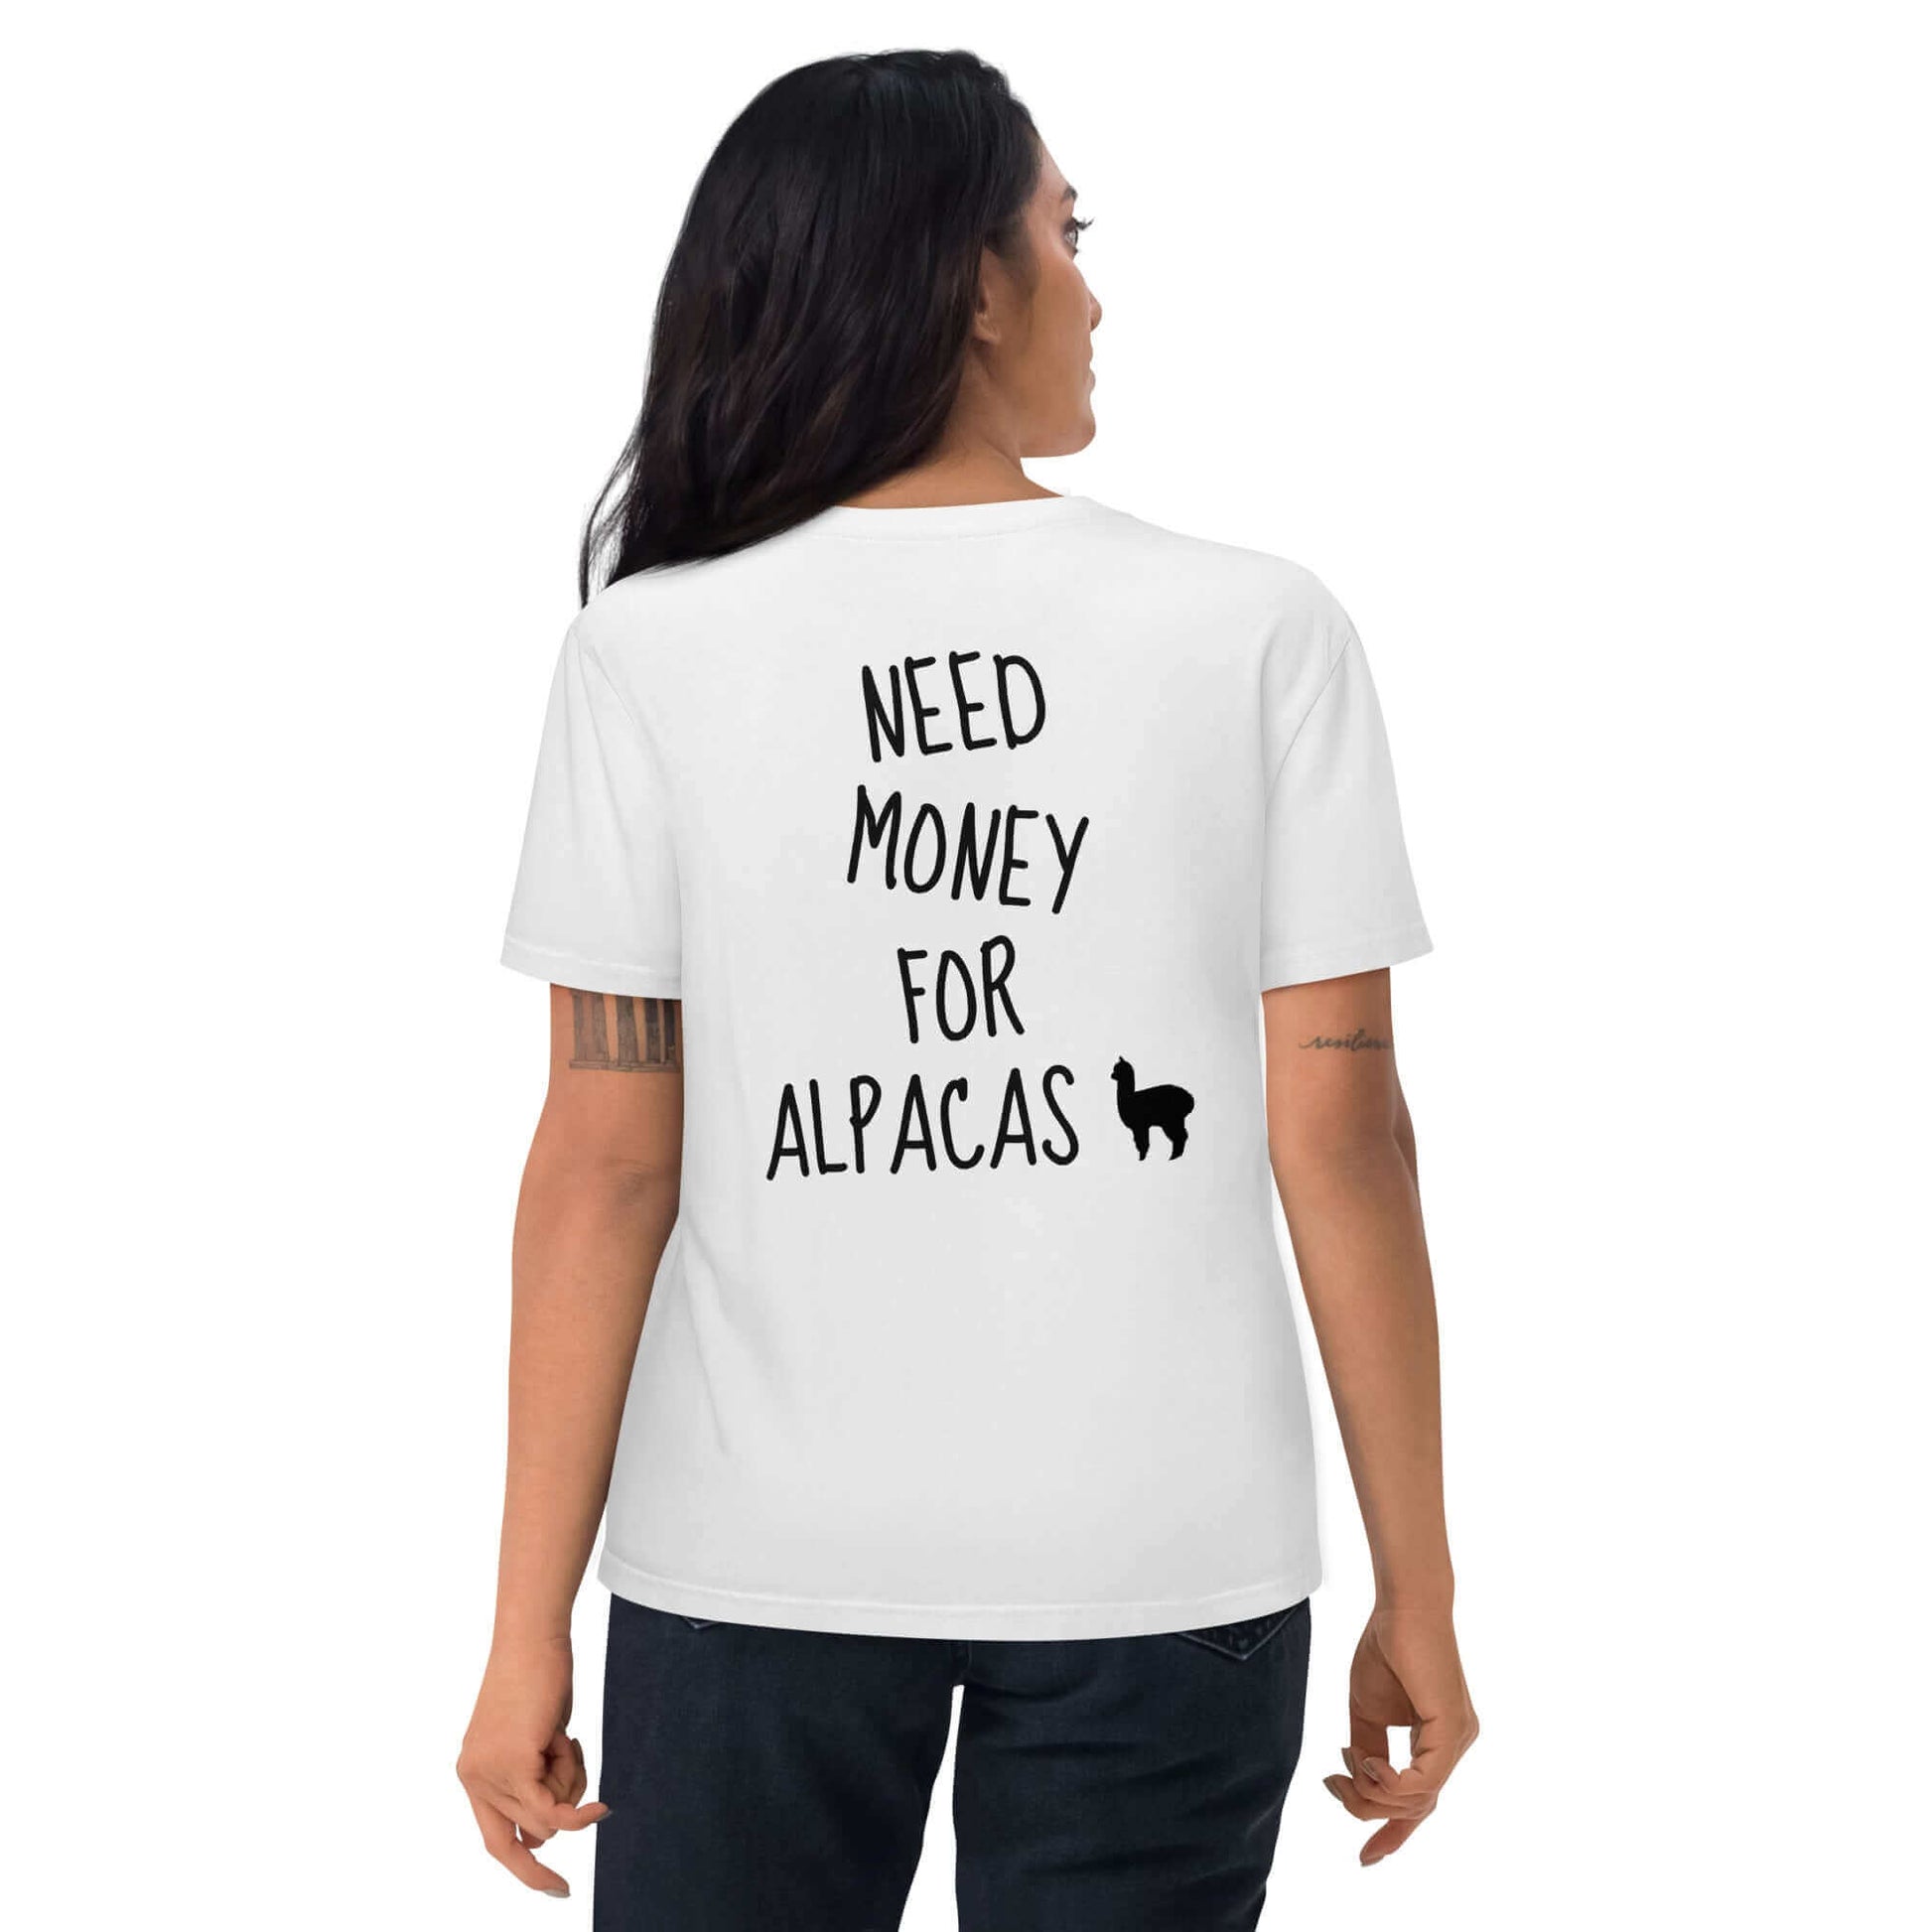 Alpaka-Lifestyle T-Shirt: Zeige Deine Liebe zu Alpakas mit nachhaltiger Kleidung und coolem Design